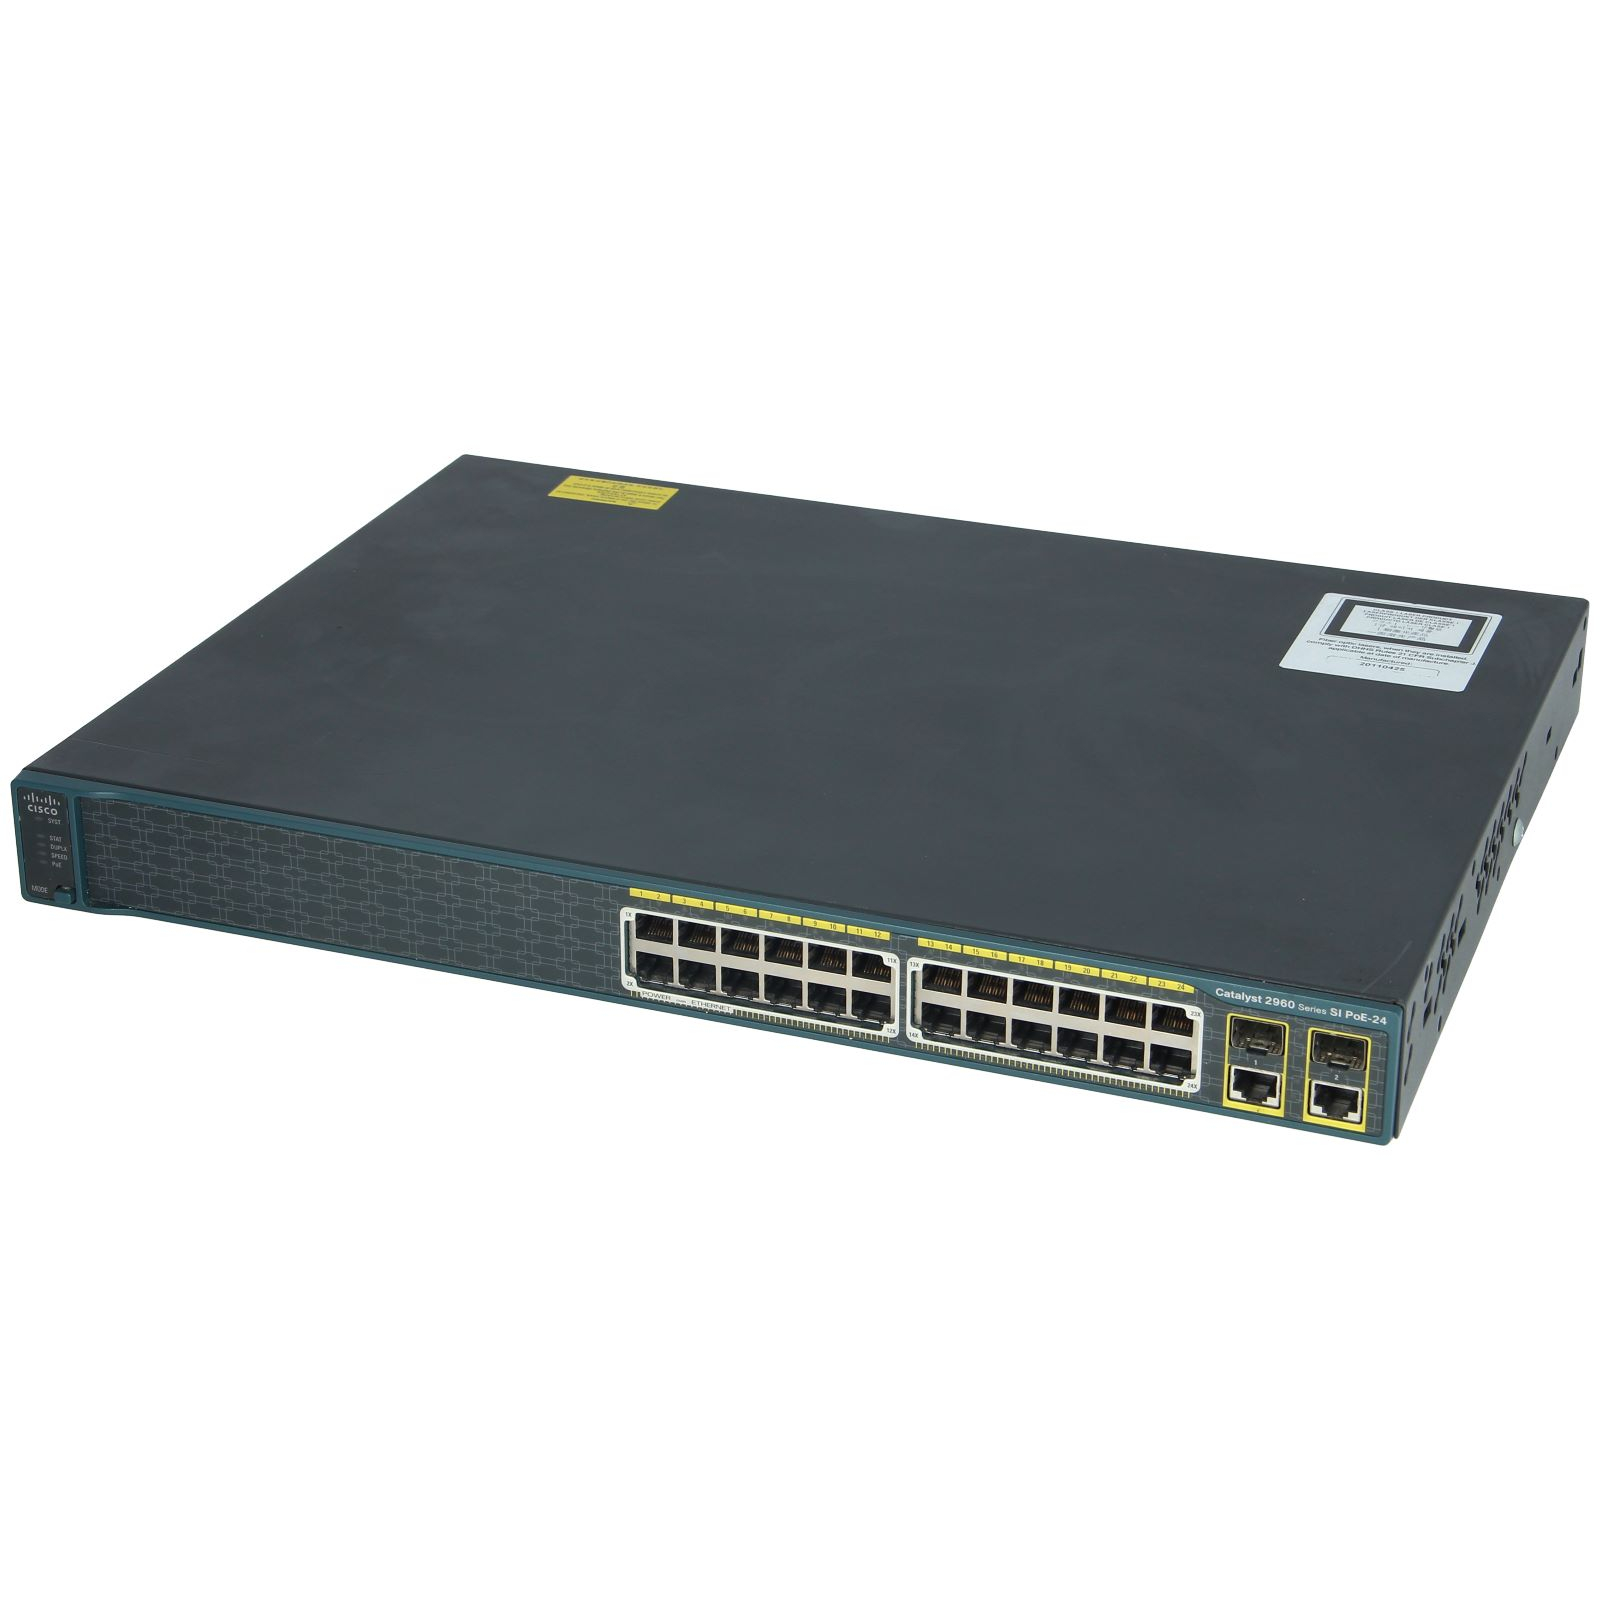 Cisco WS-C2960-24PC-S